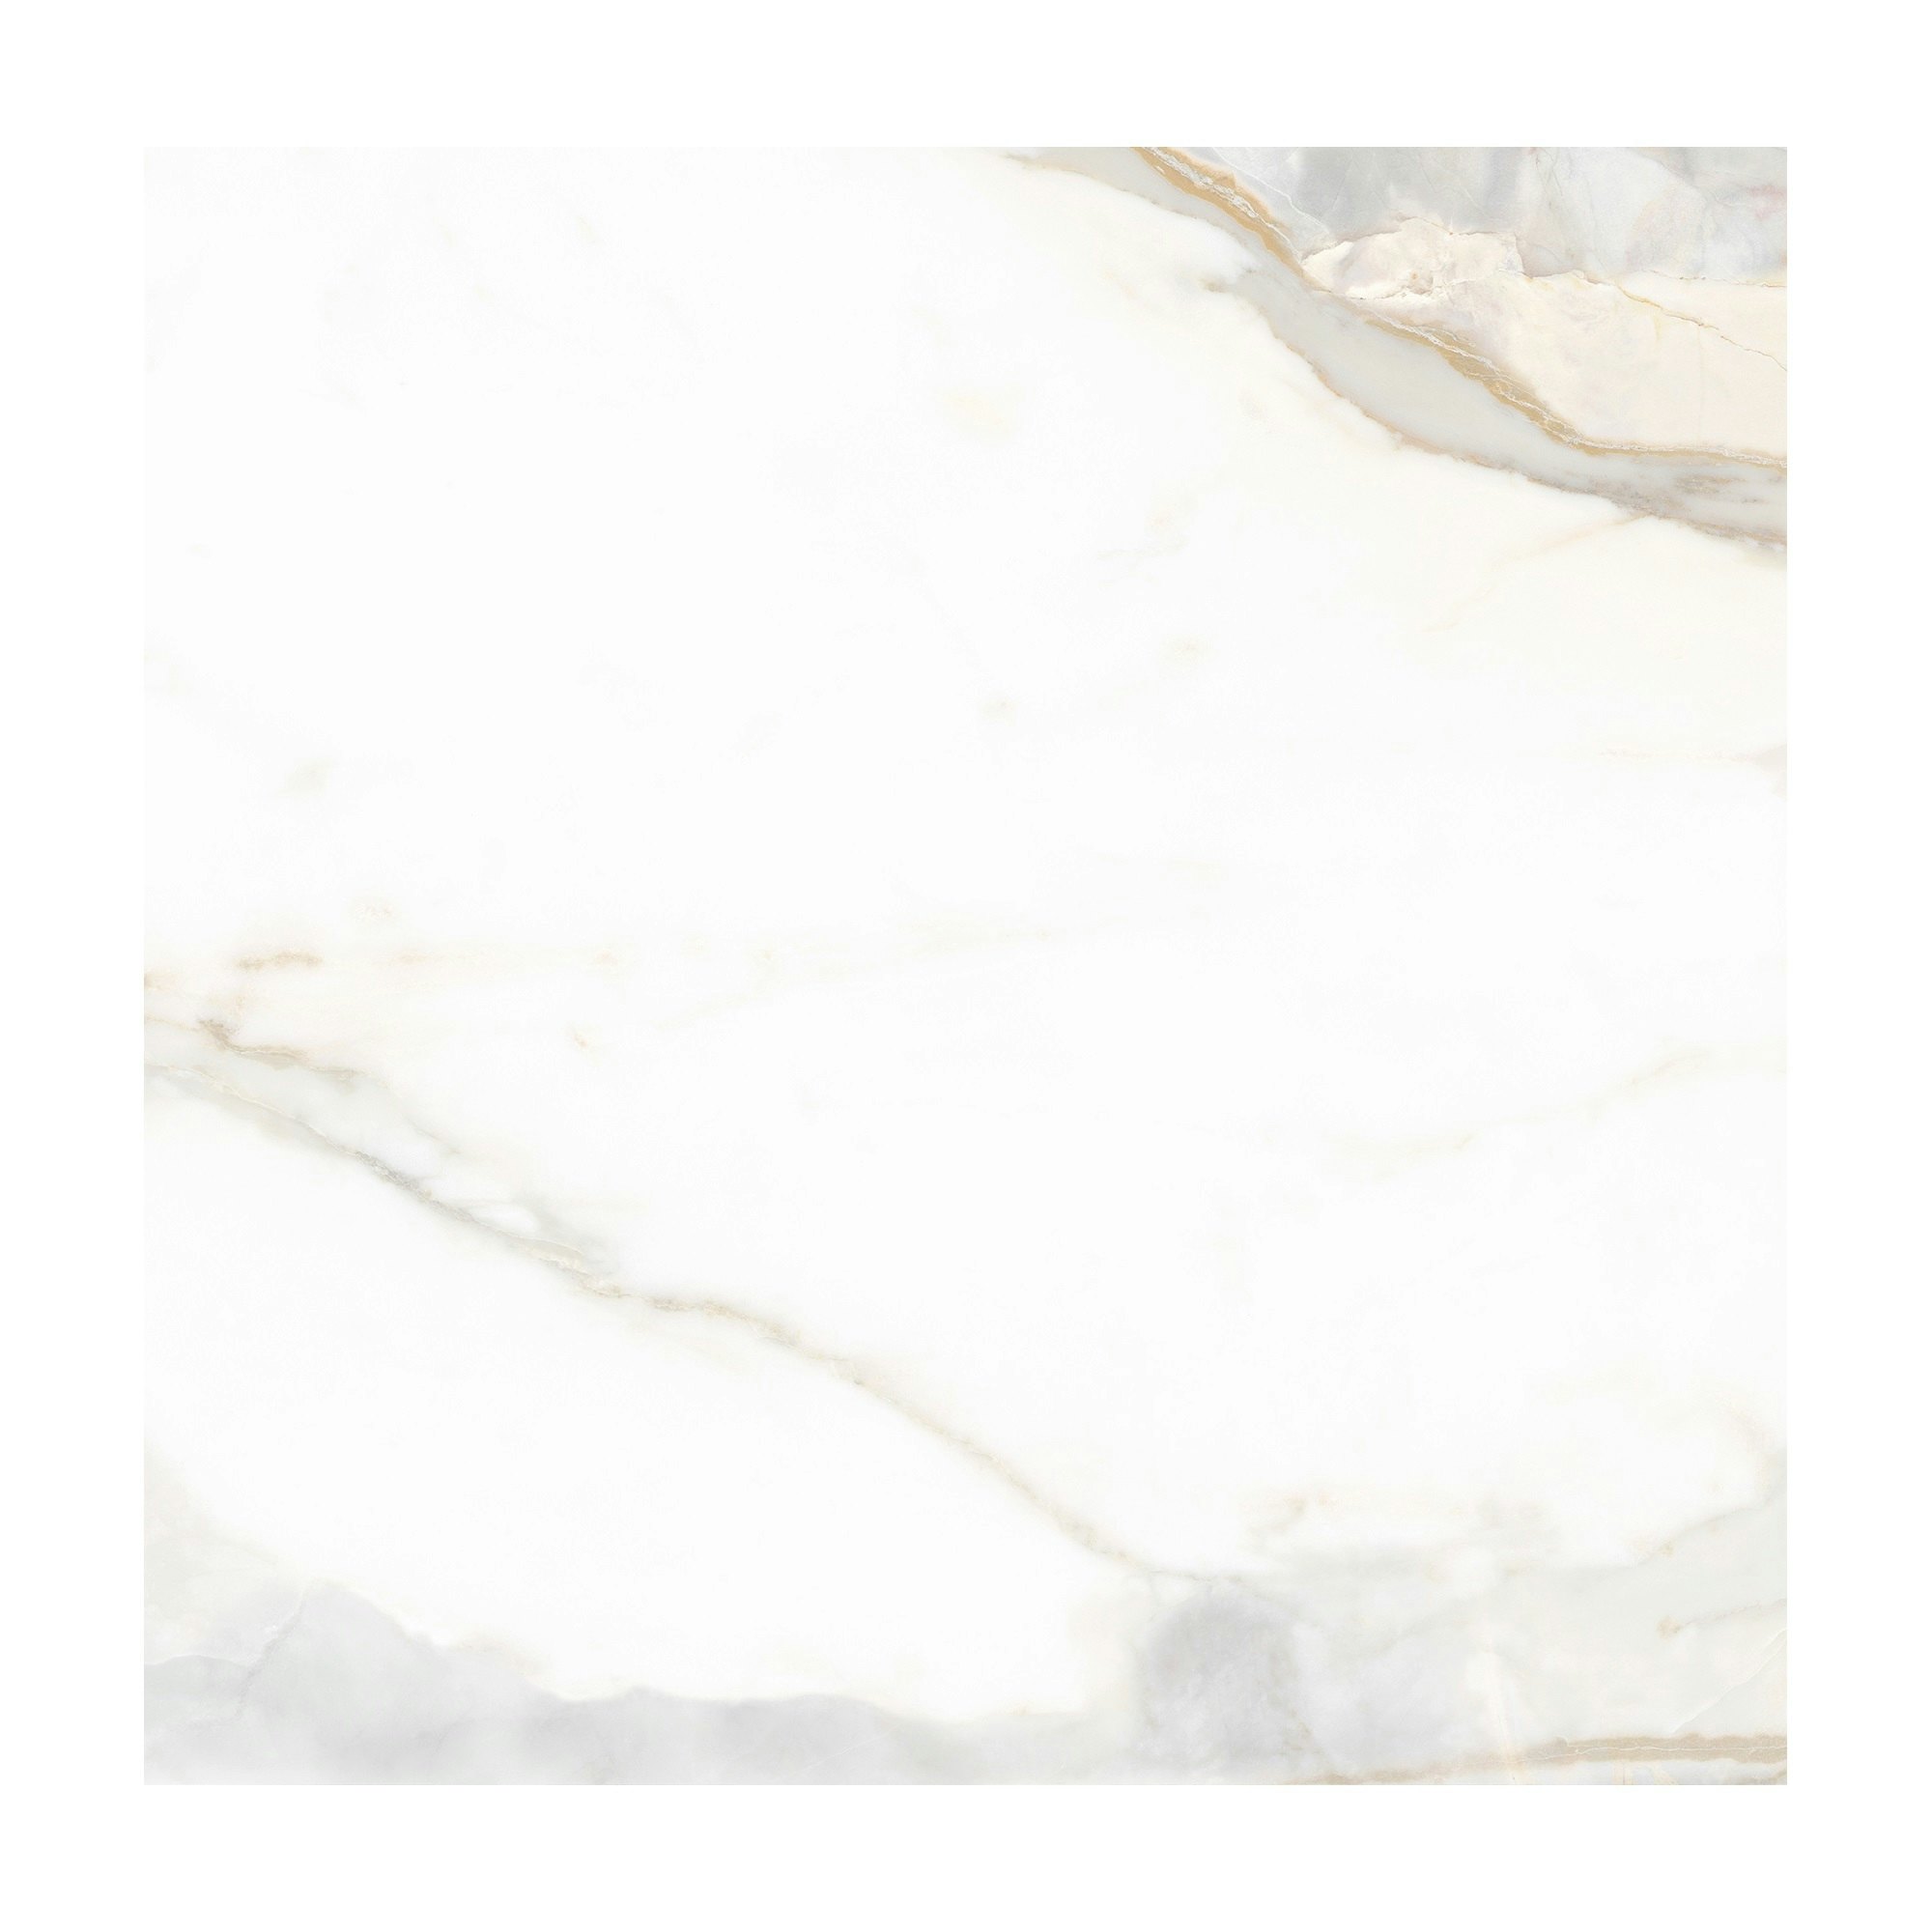 Avenza White Marble Effect Floor Tile